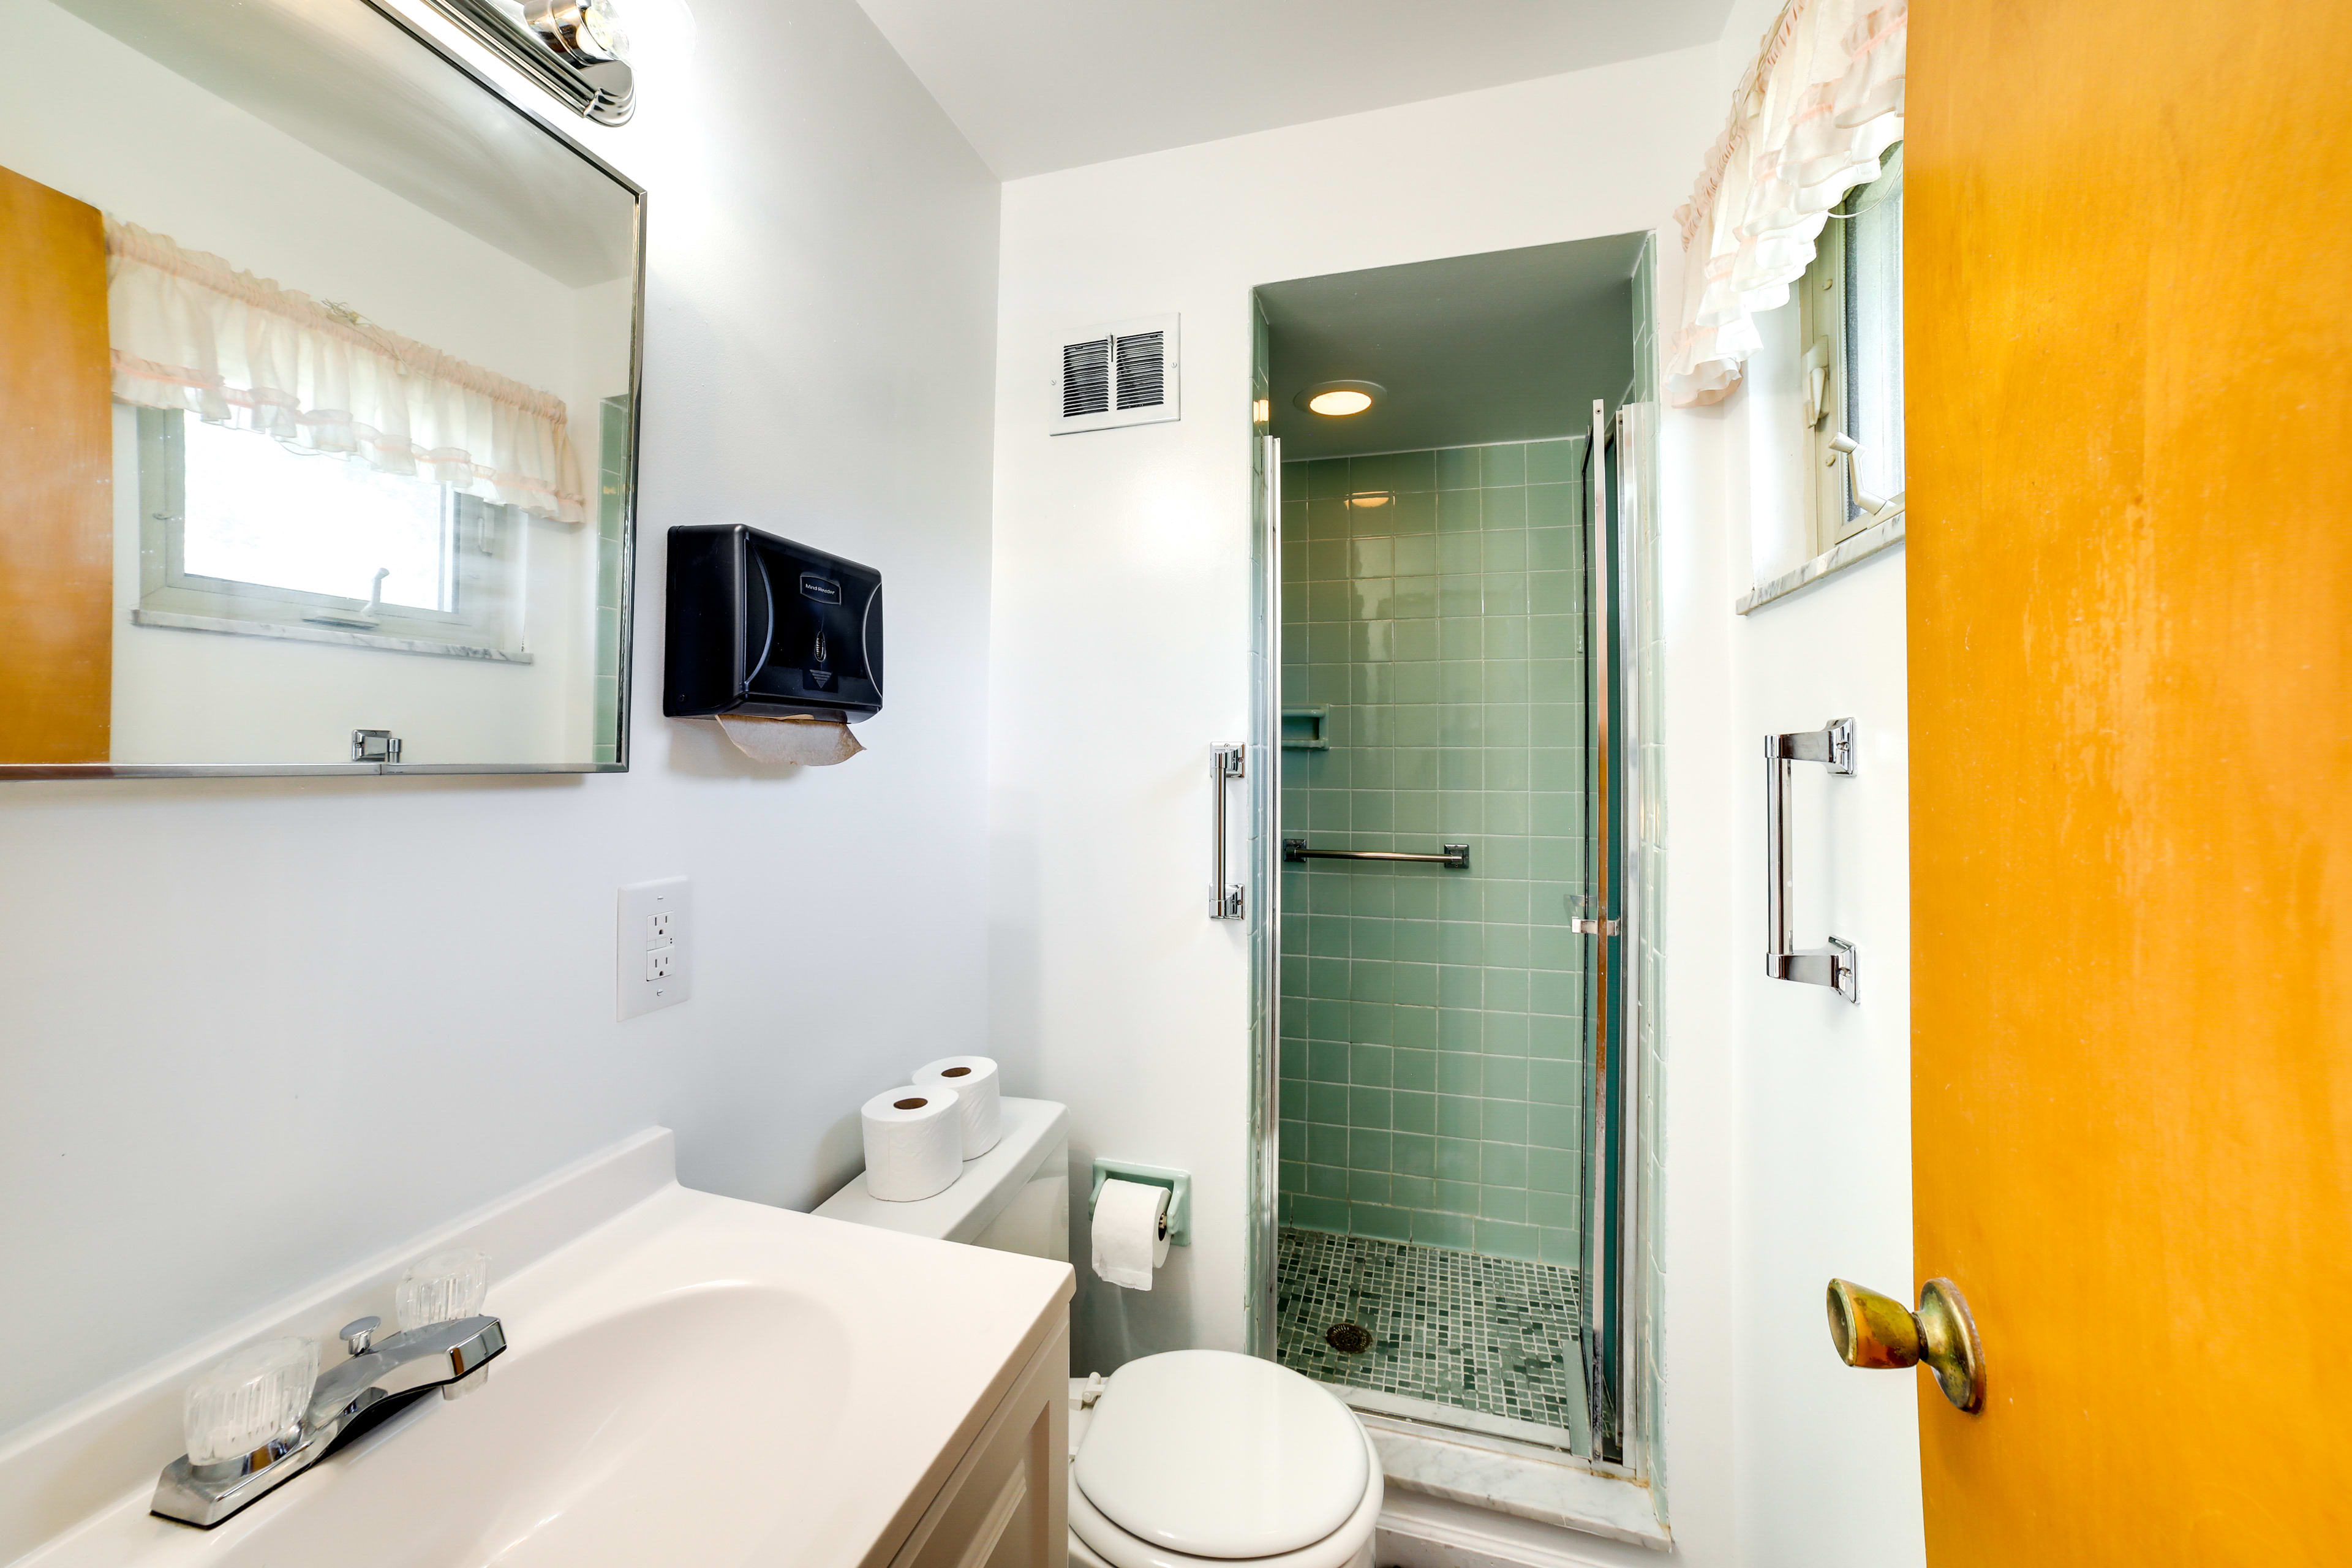 En-Suite Bathroom | Complimentary Toiletries | Hair Dryer | Towels Provided